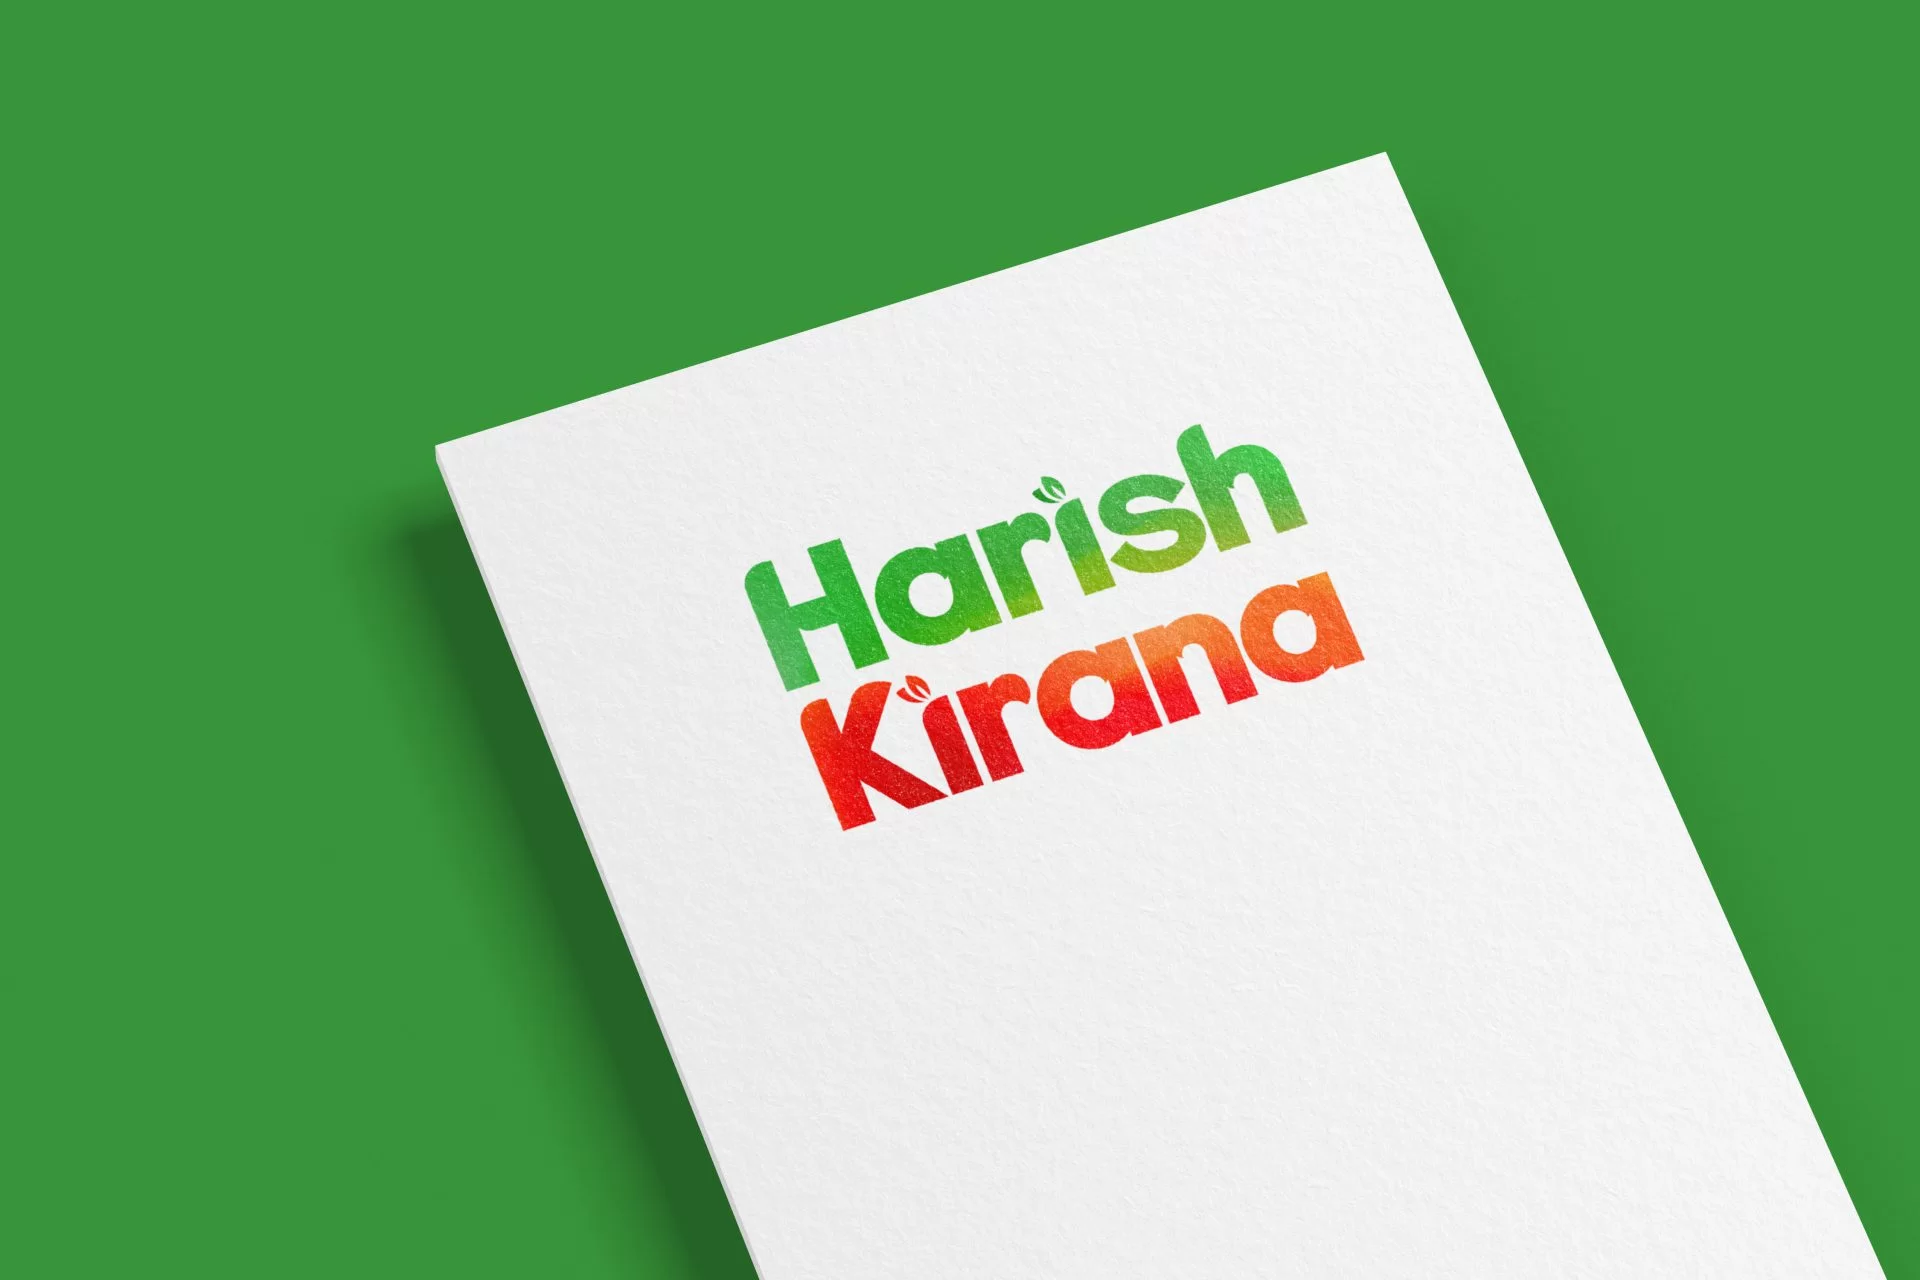 Harish Kirana Logo